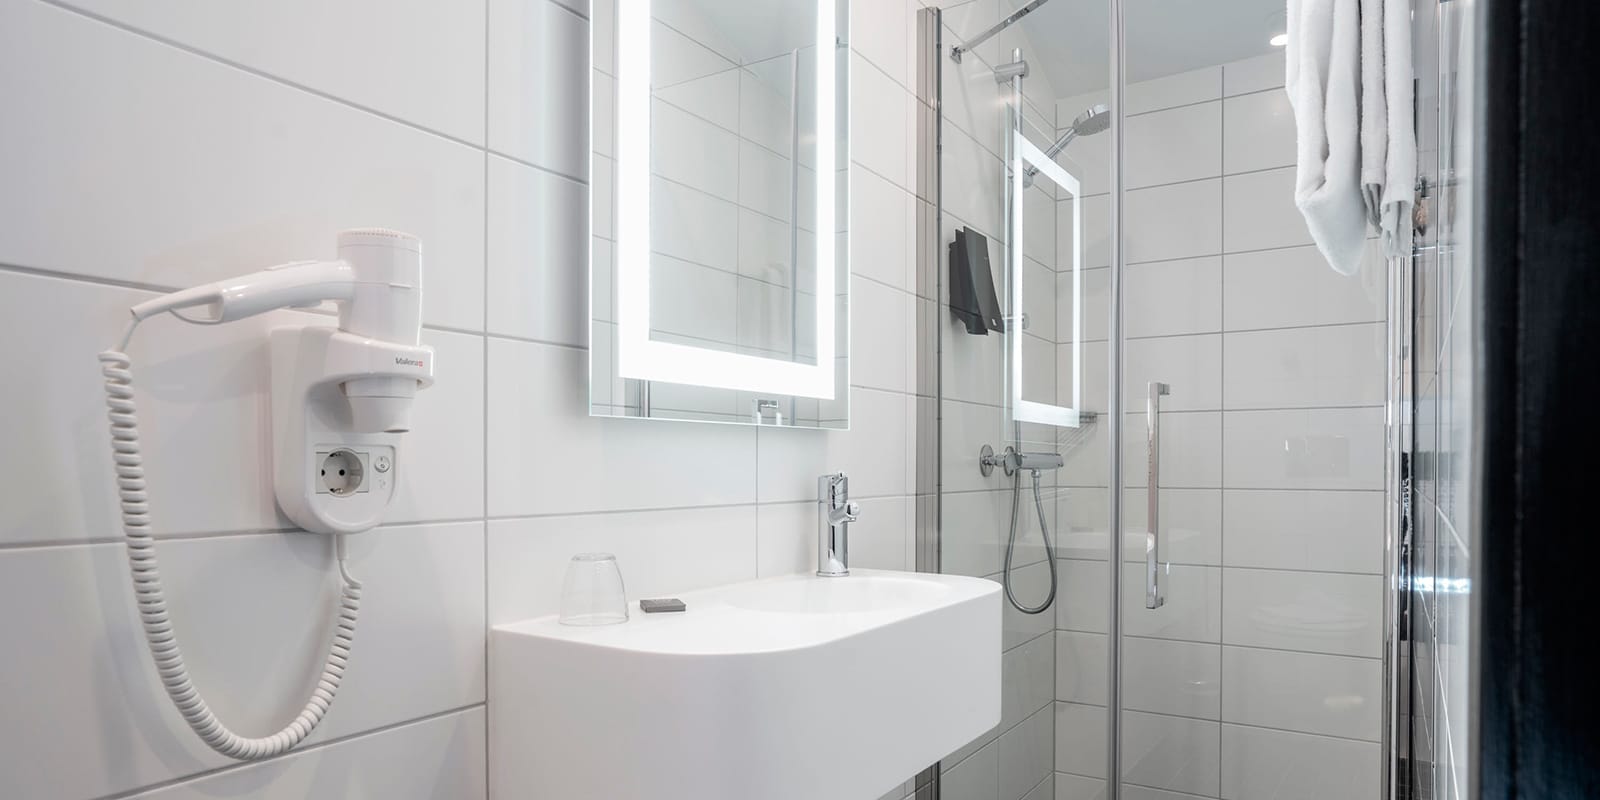 Vask og dusj på bad i standardrom på Thon Hotel Astoria i Oslo senturm